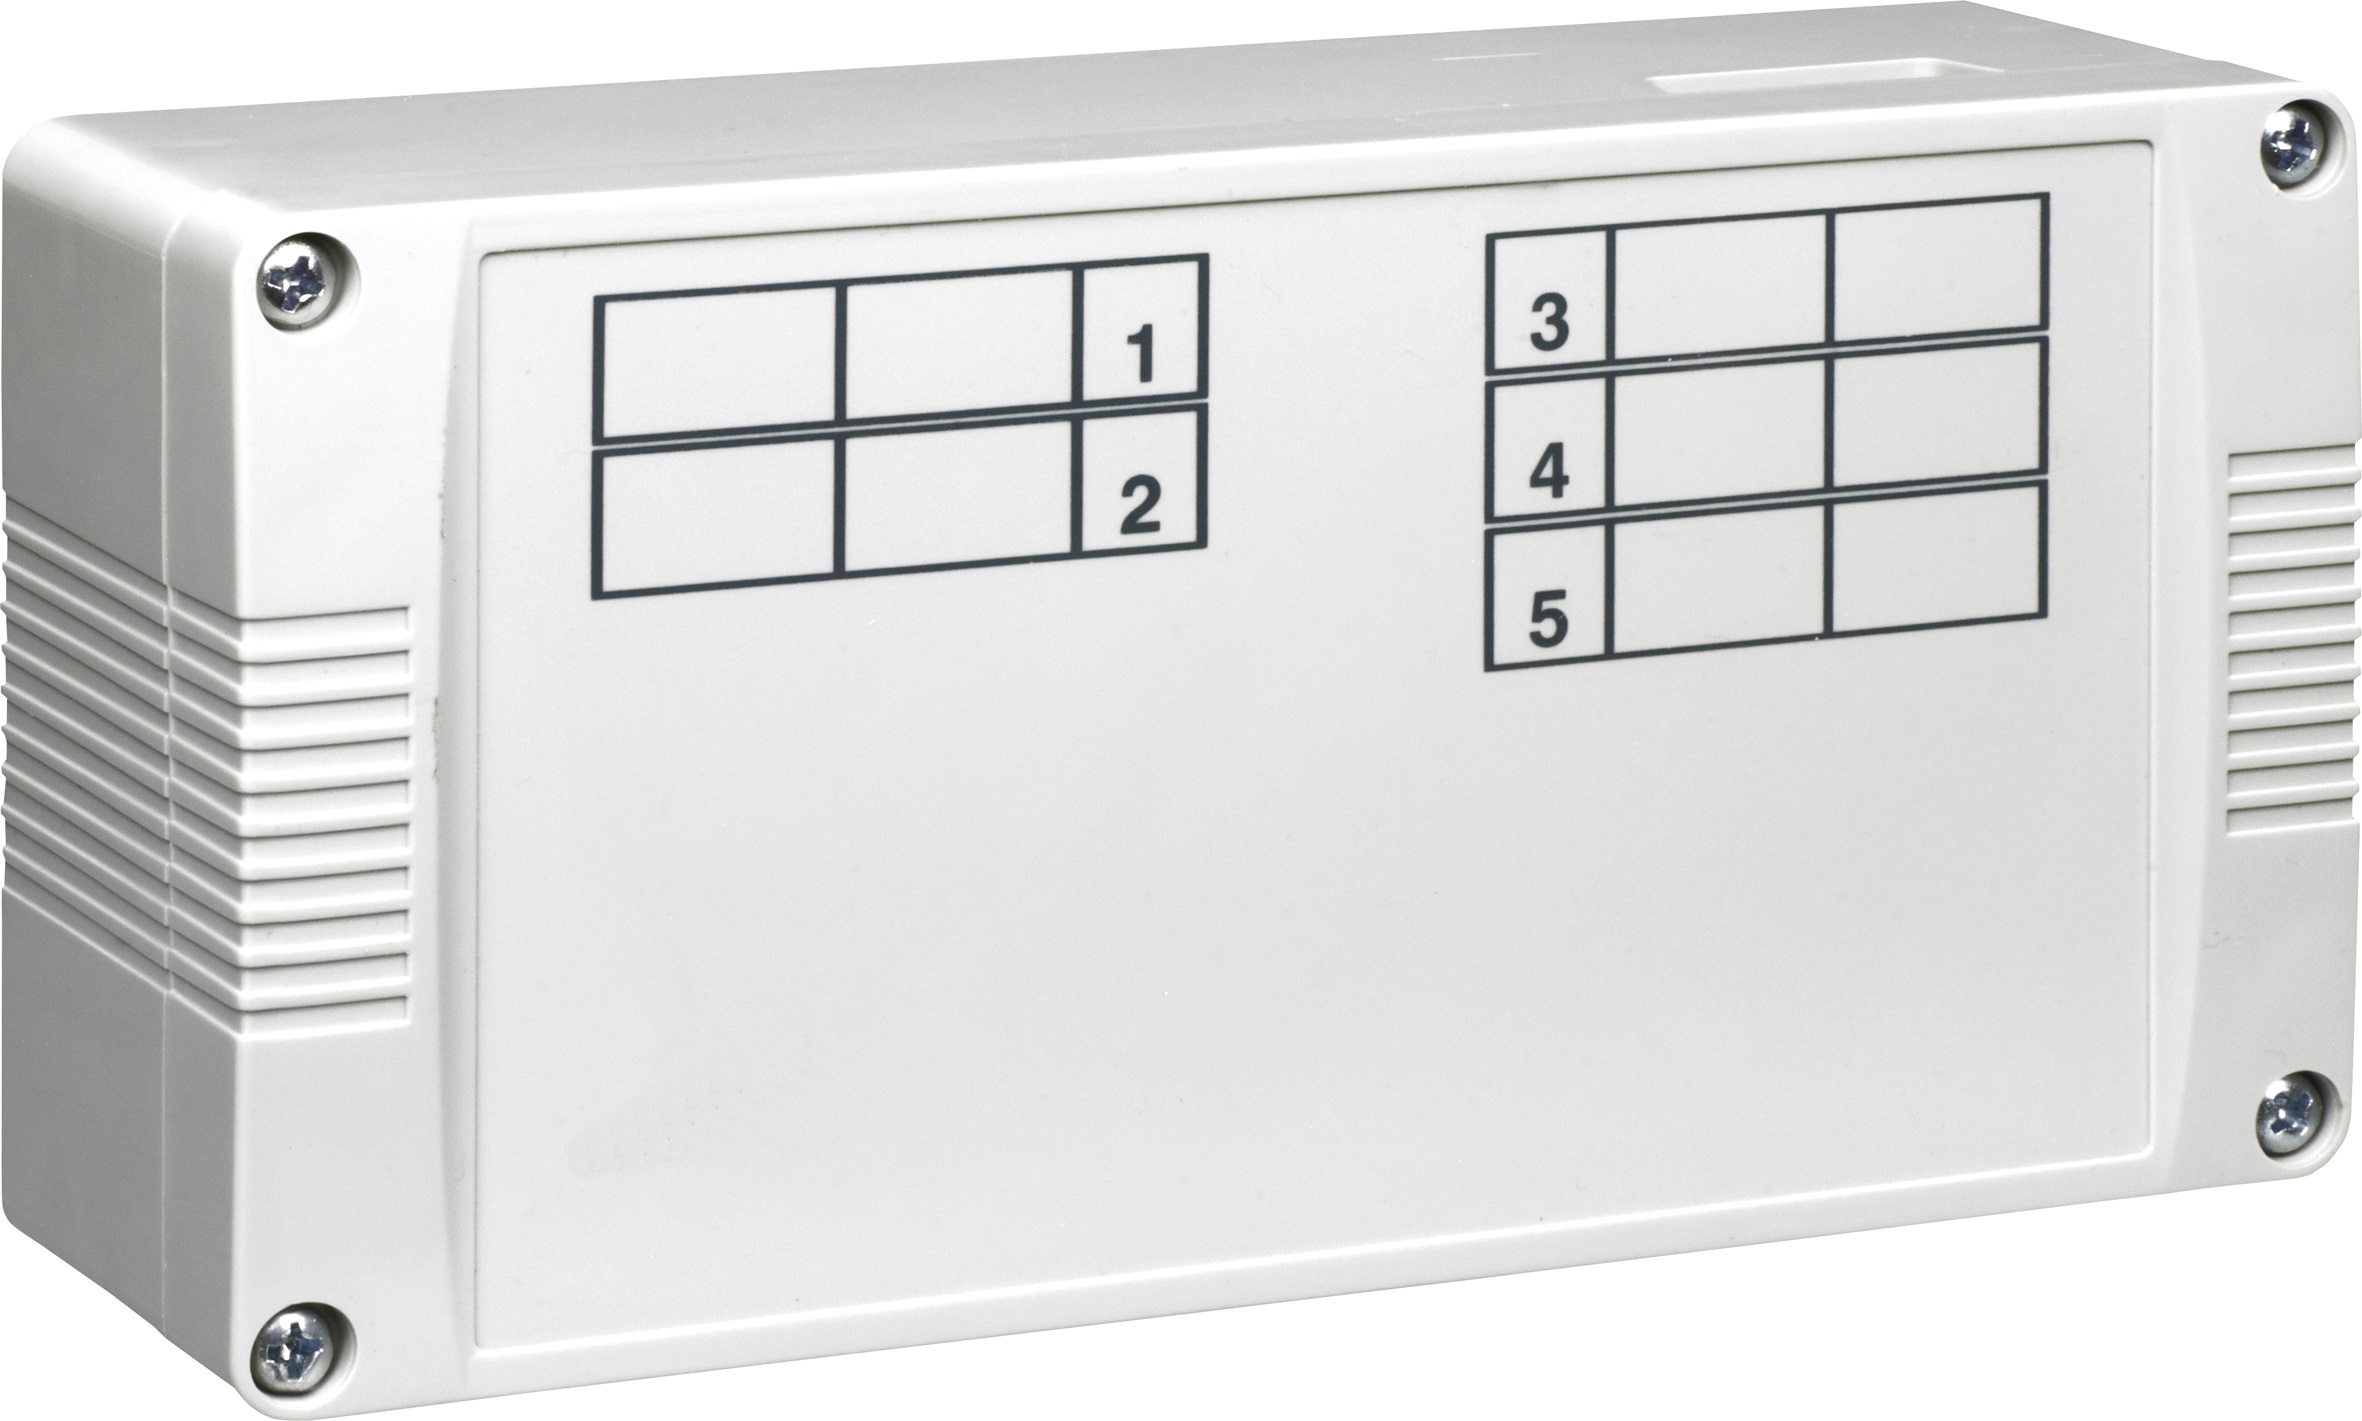 Heizkreisverteiler-Anschlusskasten für 5 Raumtemperaturregler und bis zu 4 Stellantriebe/Thermostat